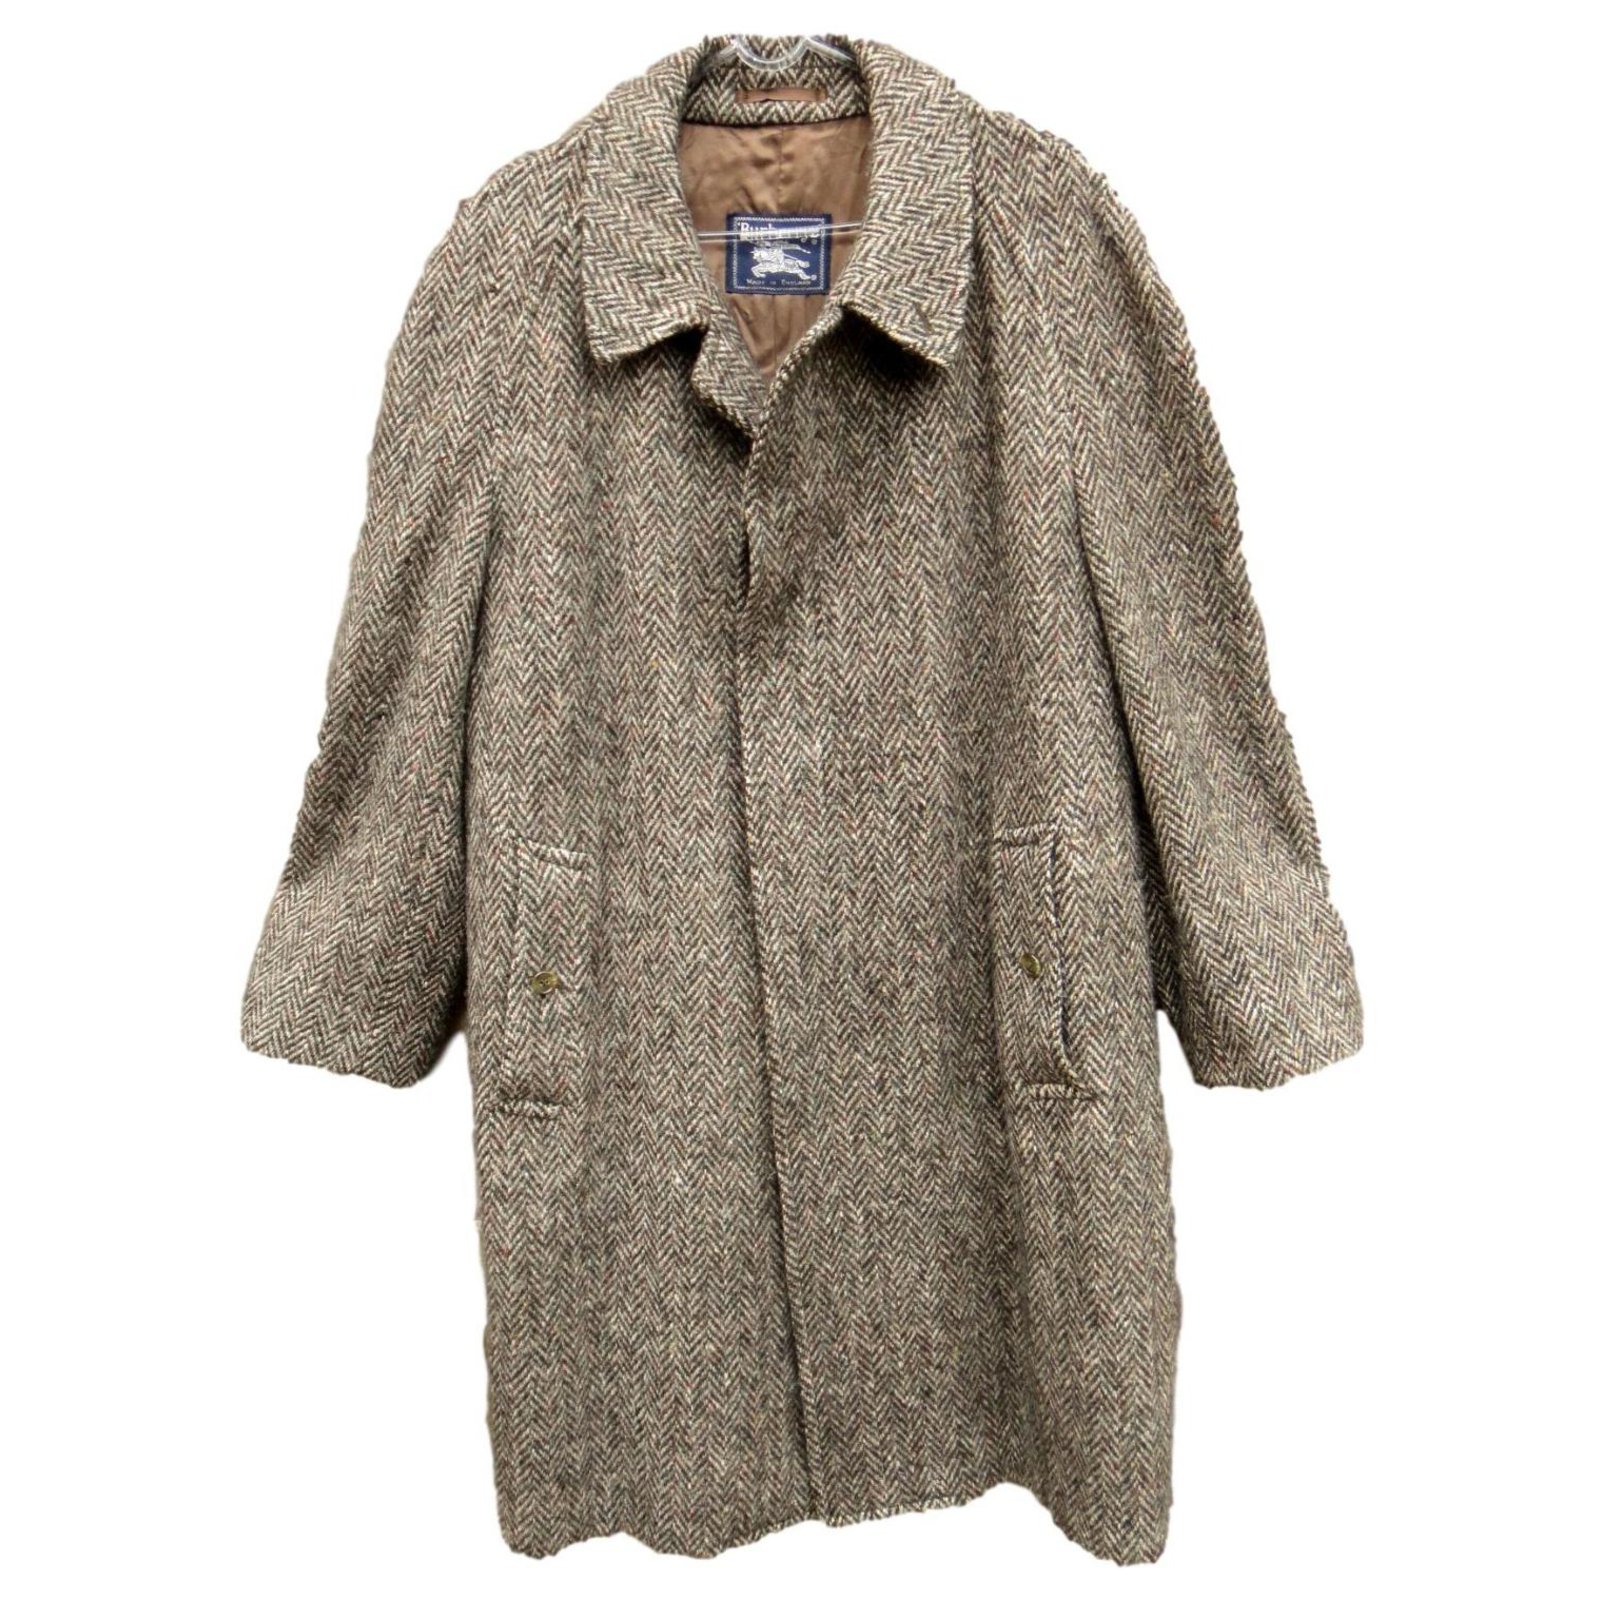 Burberry men's vintage coat in Irish Tweed t 54